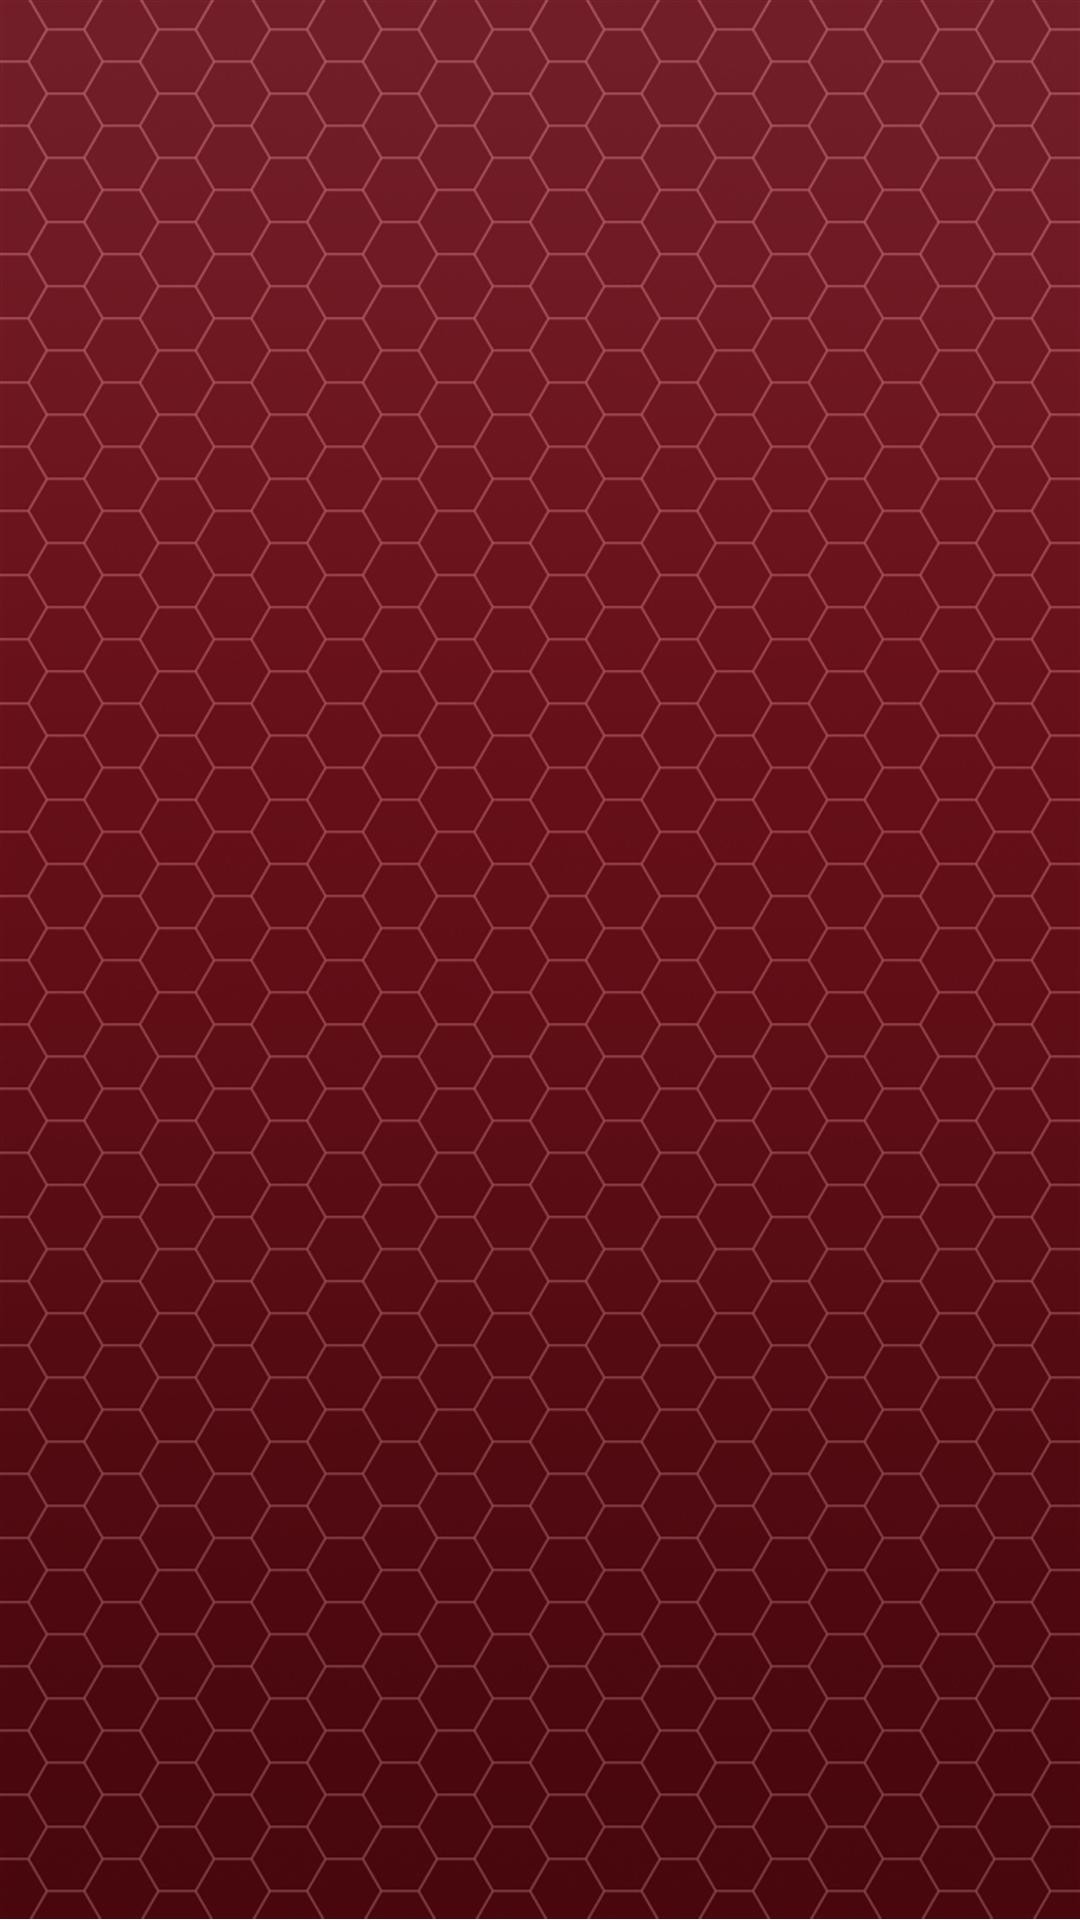 1080x1920 Honeycomb Red Pattern iPhone 6 Plus HD Wallpaper / iPod Wallpaper HD .